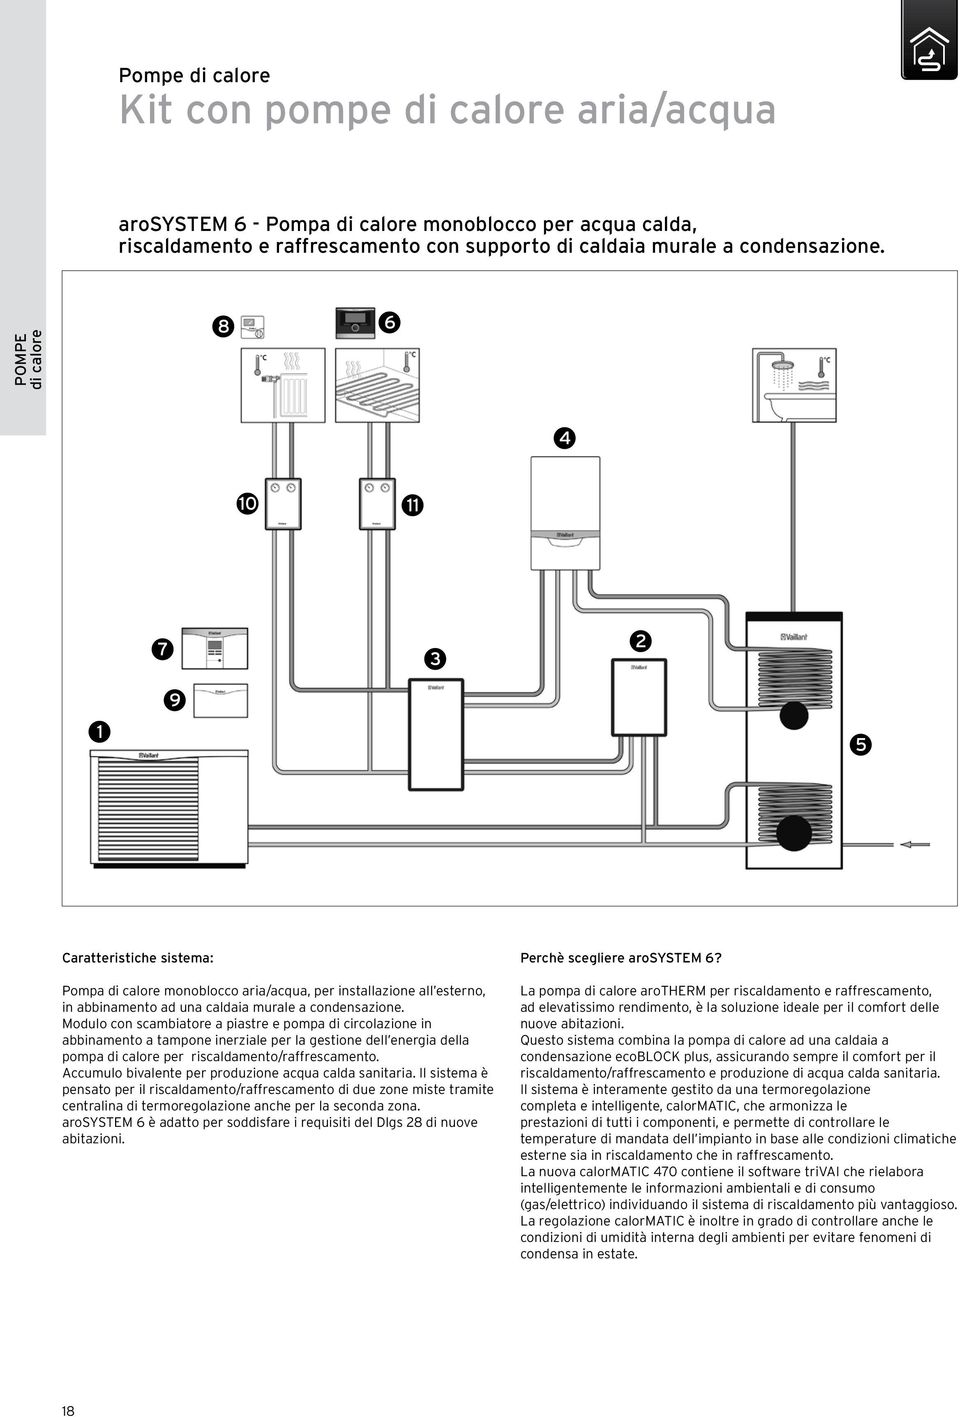 Modulo con scambiatore a piastre e pompa di circolazione in abbinamento a tampone inerziale per la gestione dell energia della pompa di calore per riscaldamento/raffrescamento.